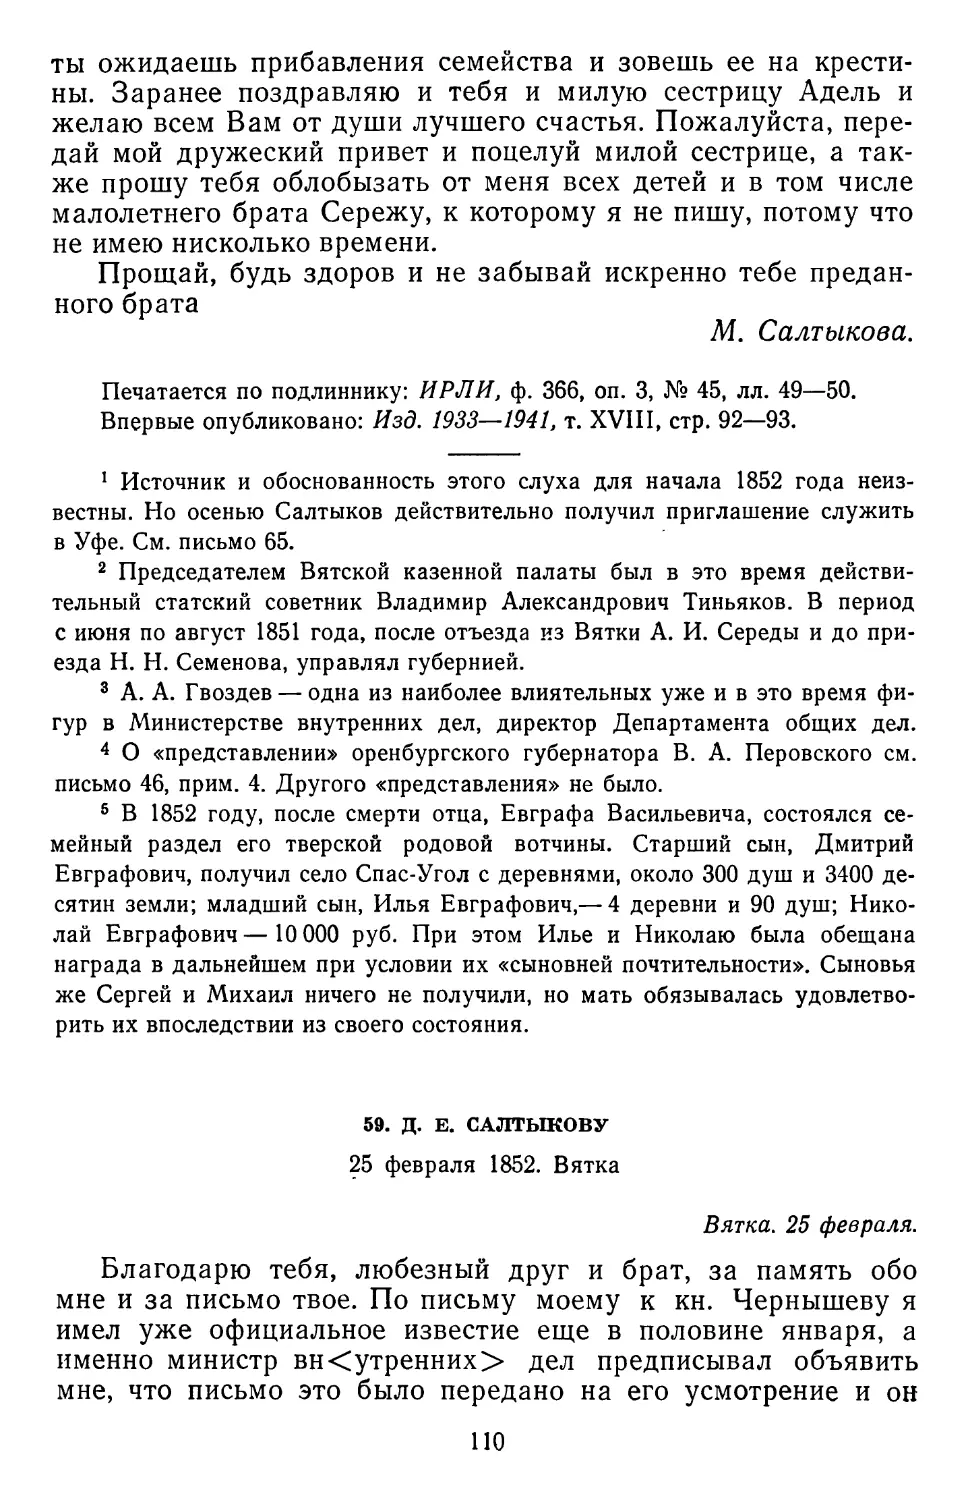 59.Д. Е. Салтыкову. 25 февраля 1852. Вятка .